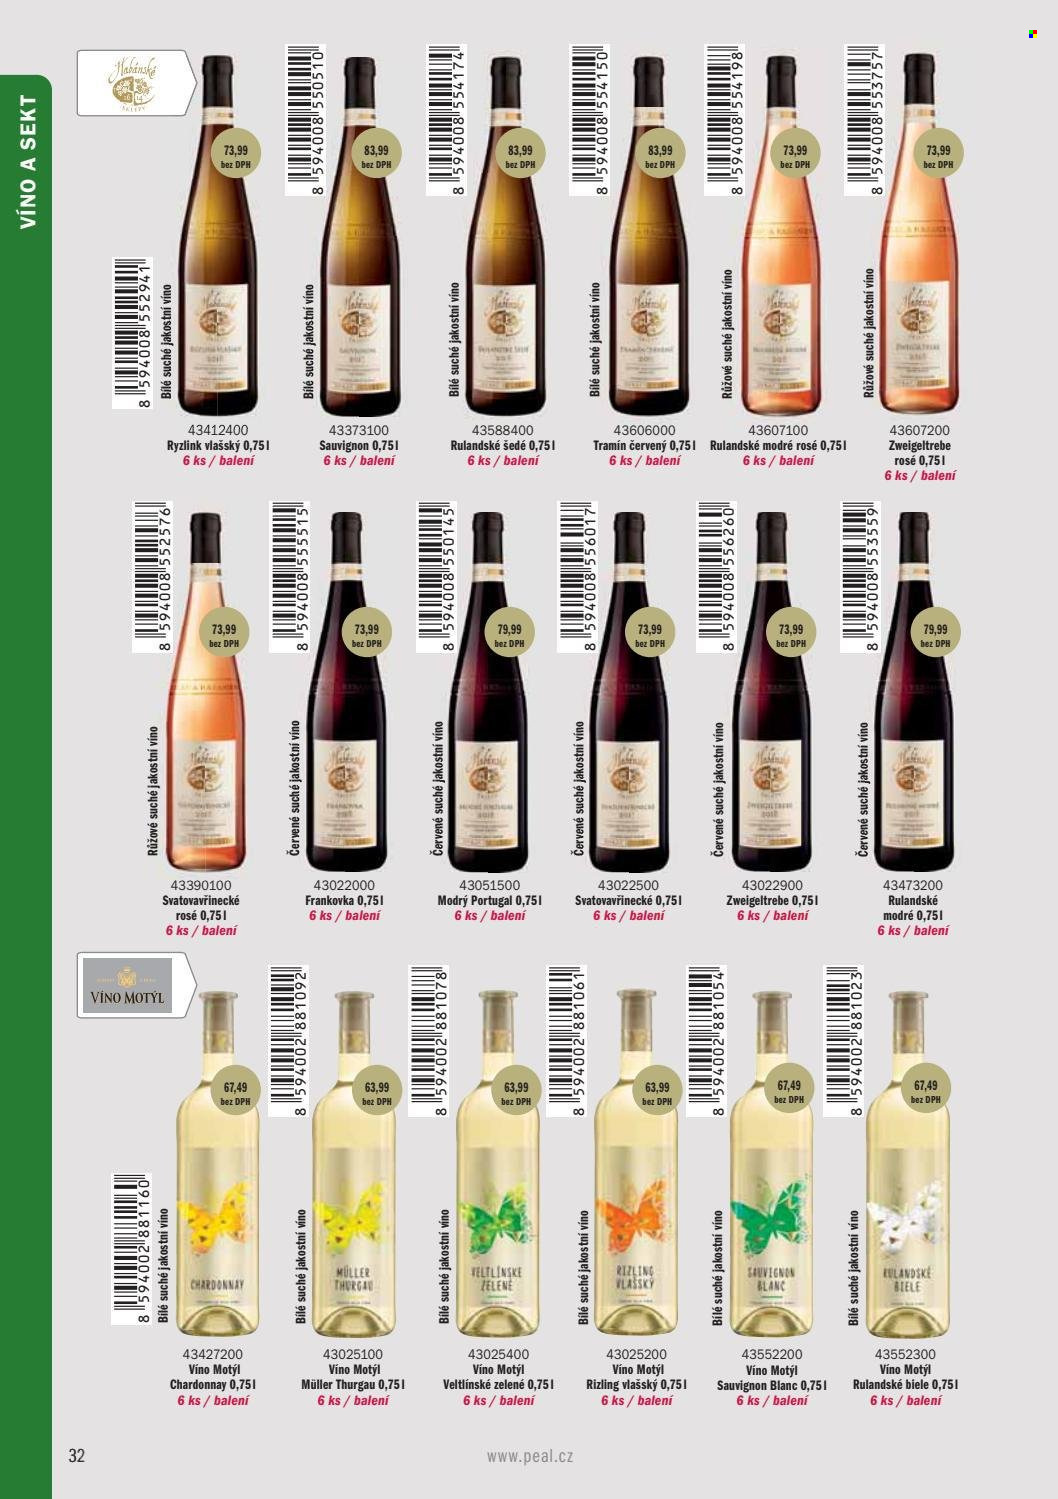 thumbnail - Leták PEAL - Produkty v akci - alkohol, sekt, Rulandské šedé, Ryzlink vlašský, Tramín červený, Chardonnay, Müller Thurgau, Rulandské modré, růžové víno, Svatovavřinecké, víno, Frankovka, Zweigeltrebe, Modrý Portugal, Veltlínské zelené, Sauvignon Blanc, Víno Motýl. Strana 34.